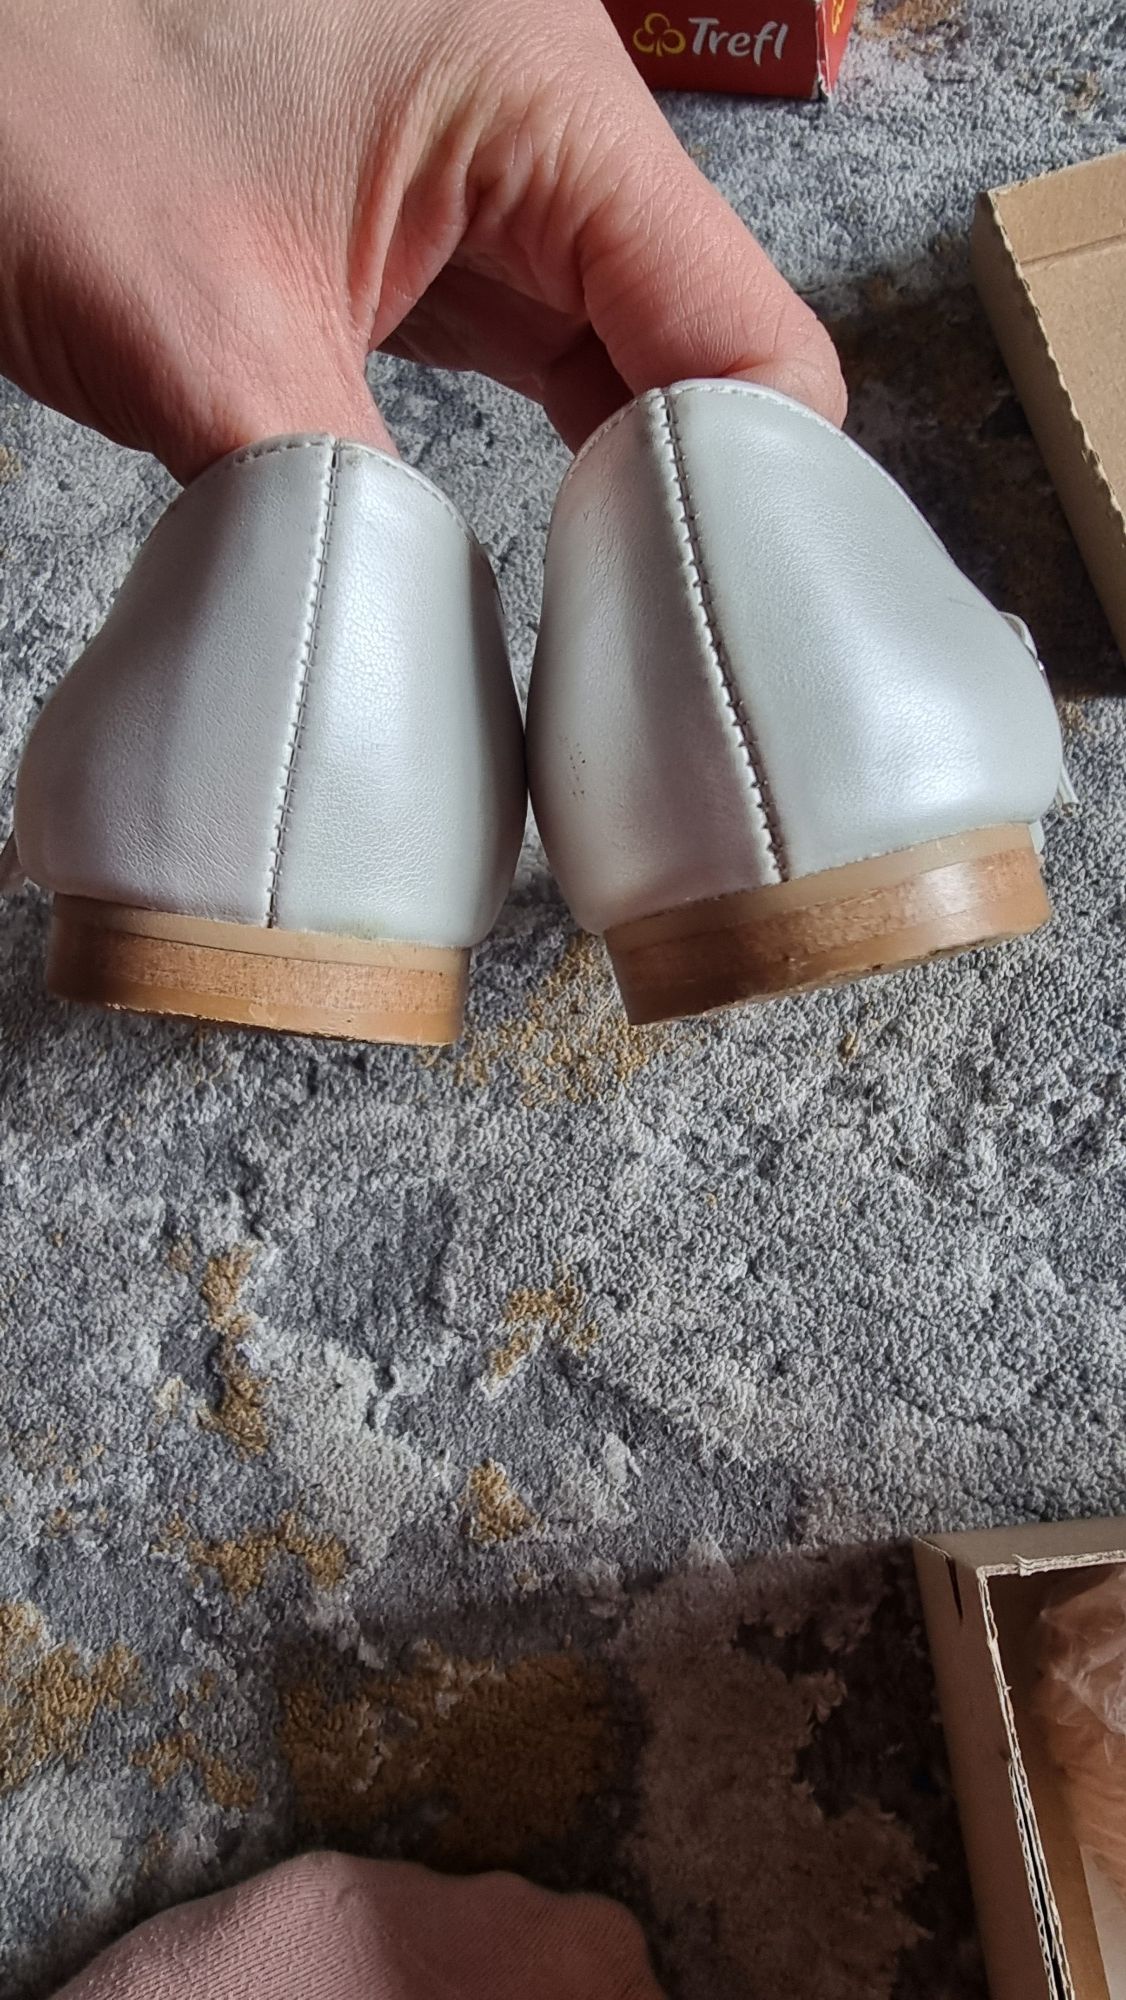 Komunijne pantofle białe perłowe buty SLY rozm 36